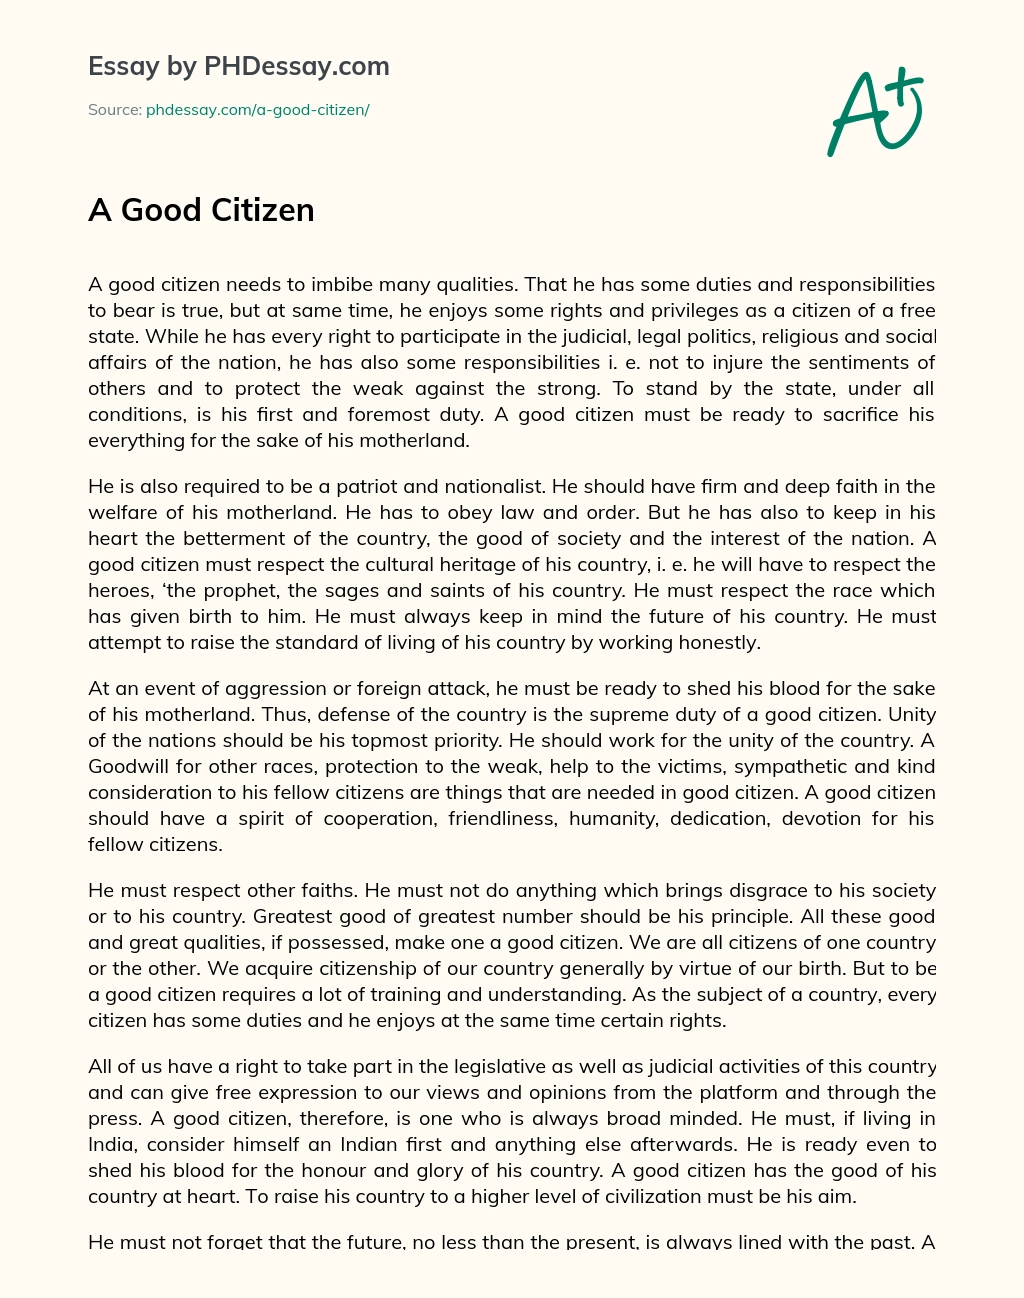 A Good Citizen essay